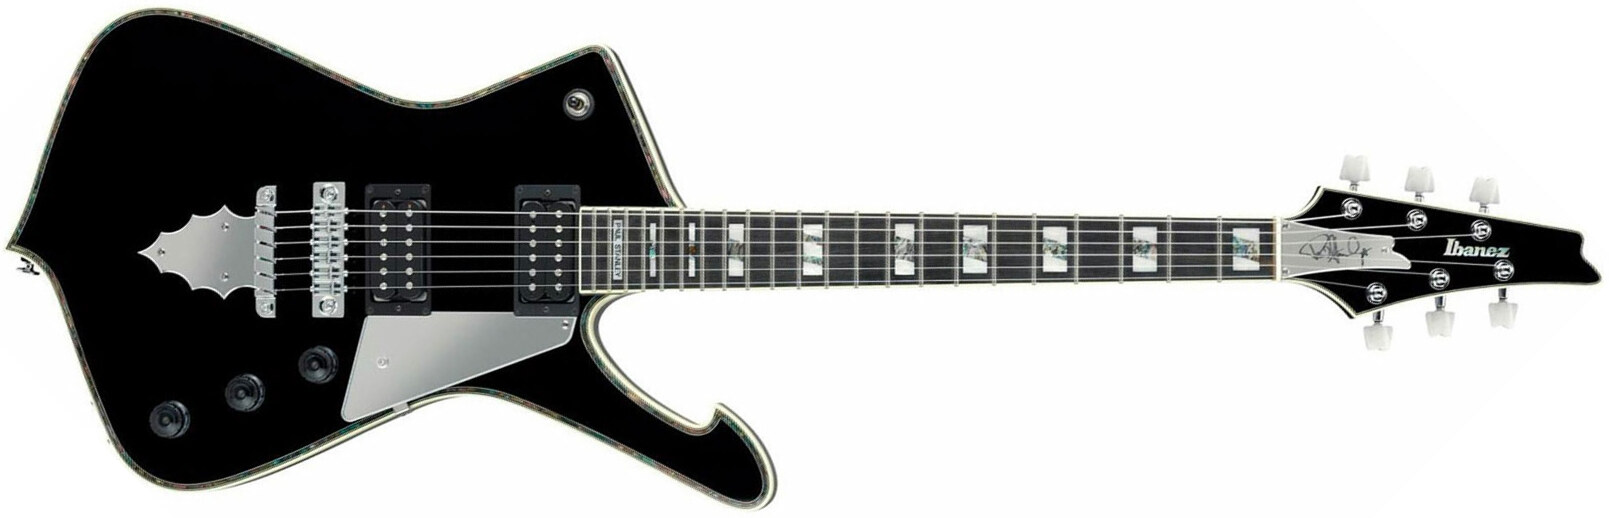 Ibanez Paul Stanley Ps10 Bk Japon Signature Hh Seymour Duncan Ht Eb - Black - E-Gitarre aus Metall - Main picture